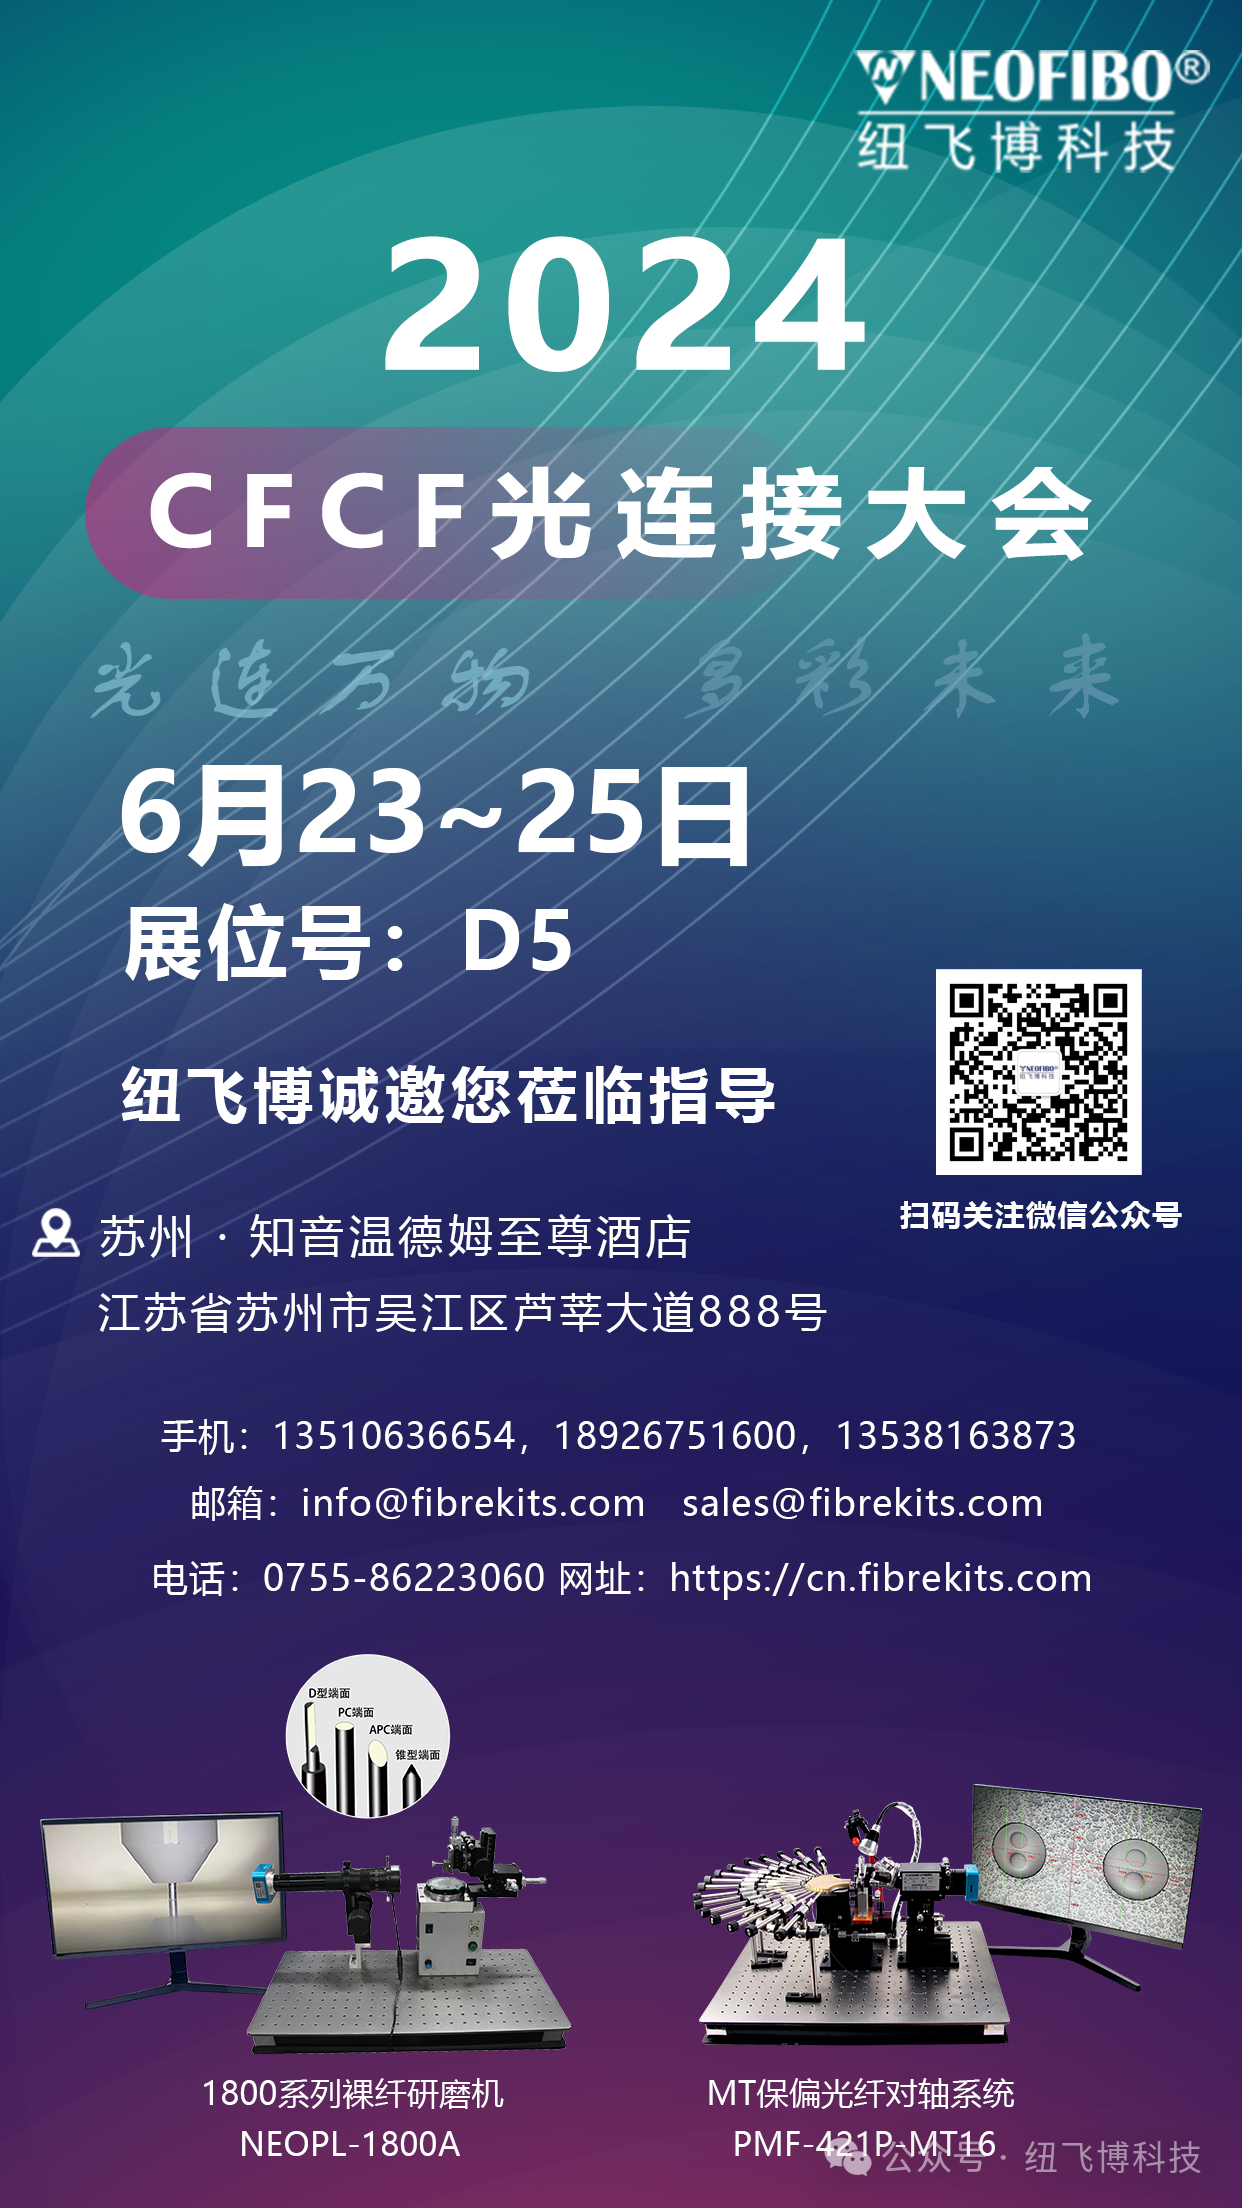 6月23日-25日，纽飞博邀您共聚苏州·CFCF光连接大会，共话光通信新篇章！